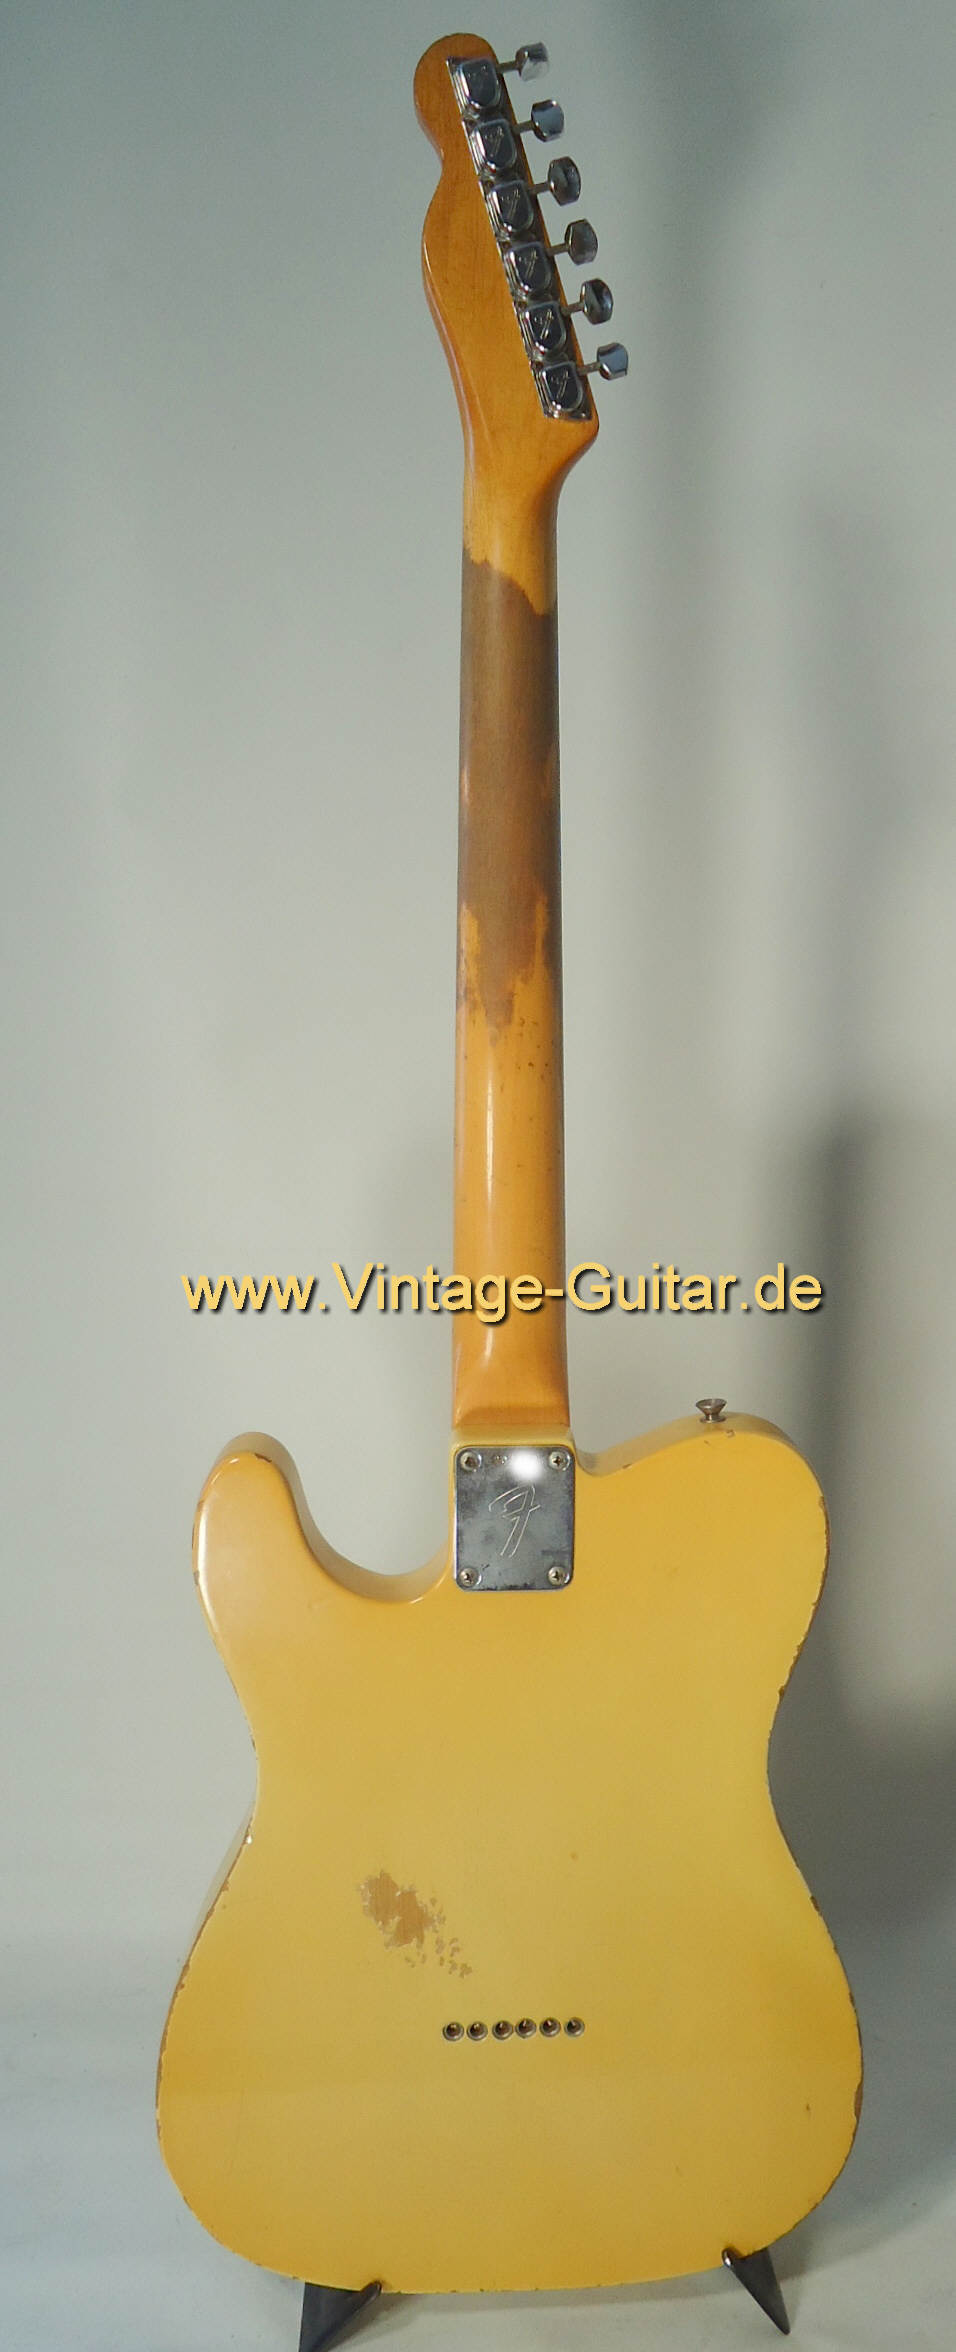 Fender-Telecaster-1967-blond-b.jpg